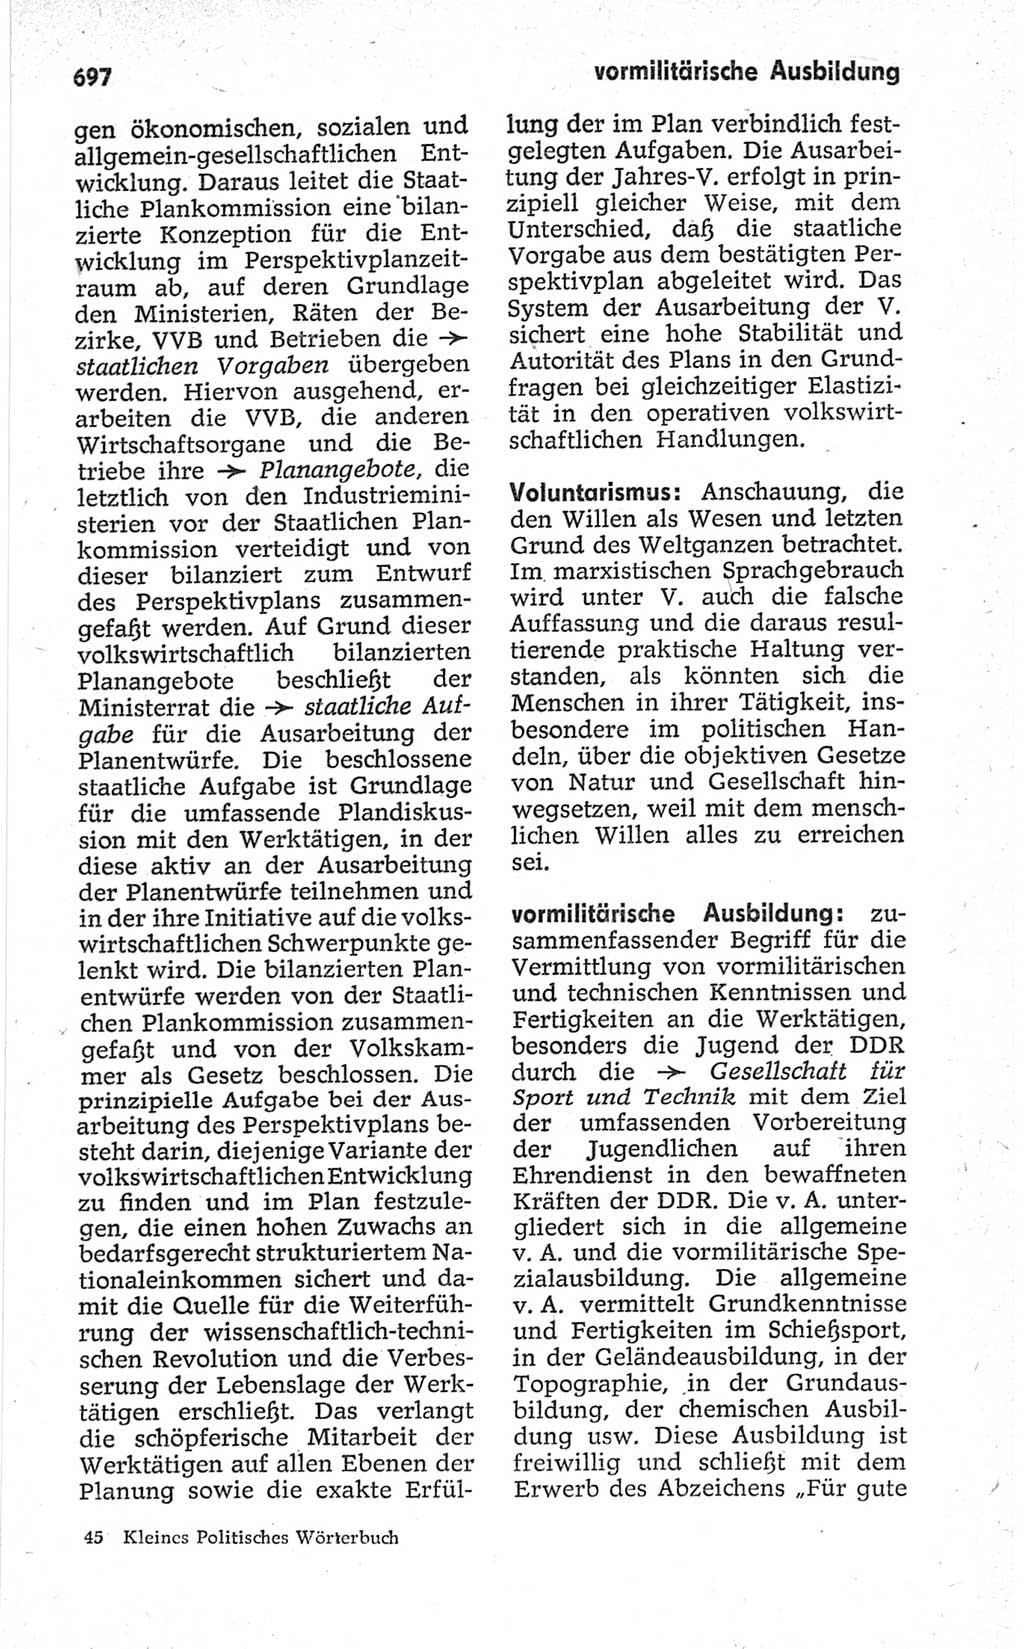 Kleines politisches Wörterbuch [Deutsche Demokratische Republik (DDR)] 1967, Seite 697 (Kl. pol. Wb. DDR 1967, S. 697)